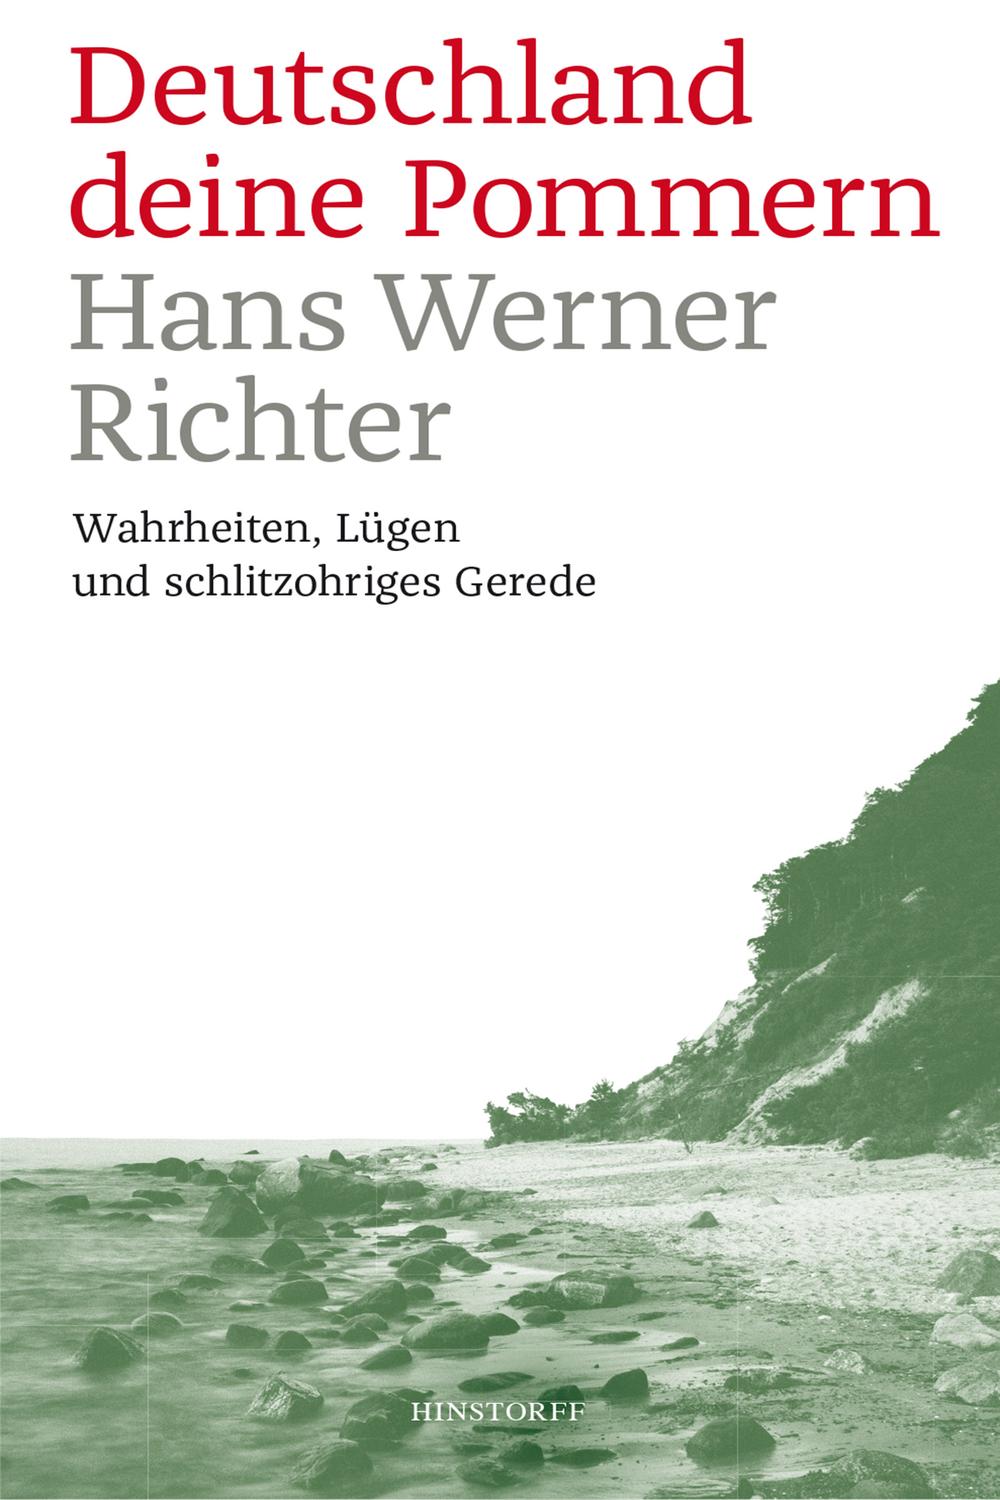 Deutschland deine Pommern - Hans Werner Richter,,